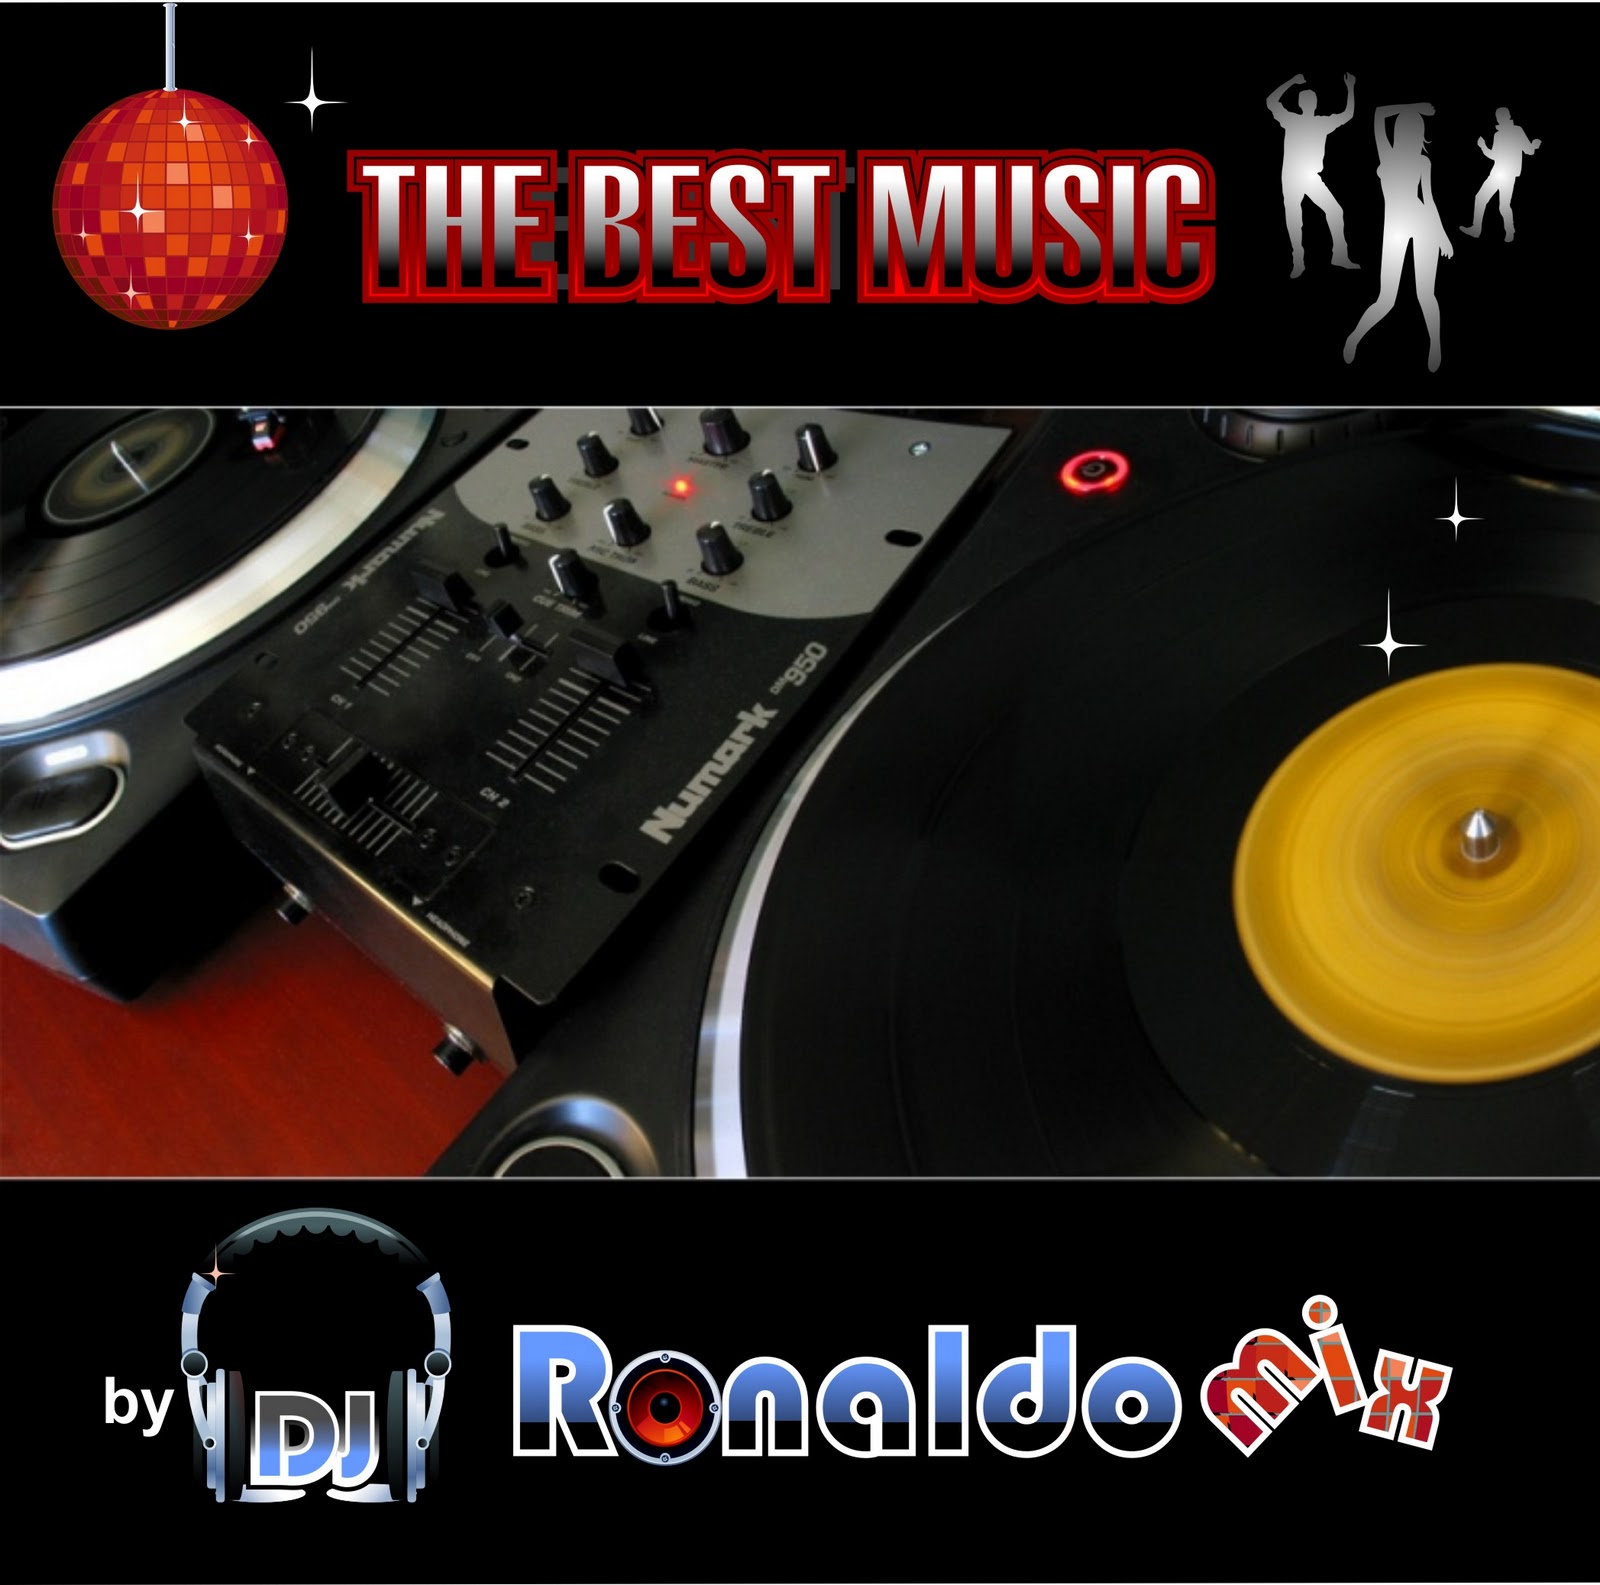 http://2.bp.blogspot.com/_1C434tNGAXQ/TPjgxifob_I/AAAAAAAAAYE/Fr8vcAv1HBQ/s1600/THE+BEST+MUSIC+-+DJ+Ronaldomix+Contra+Capa.jpg